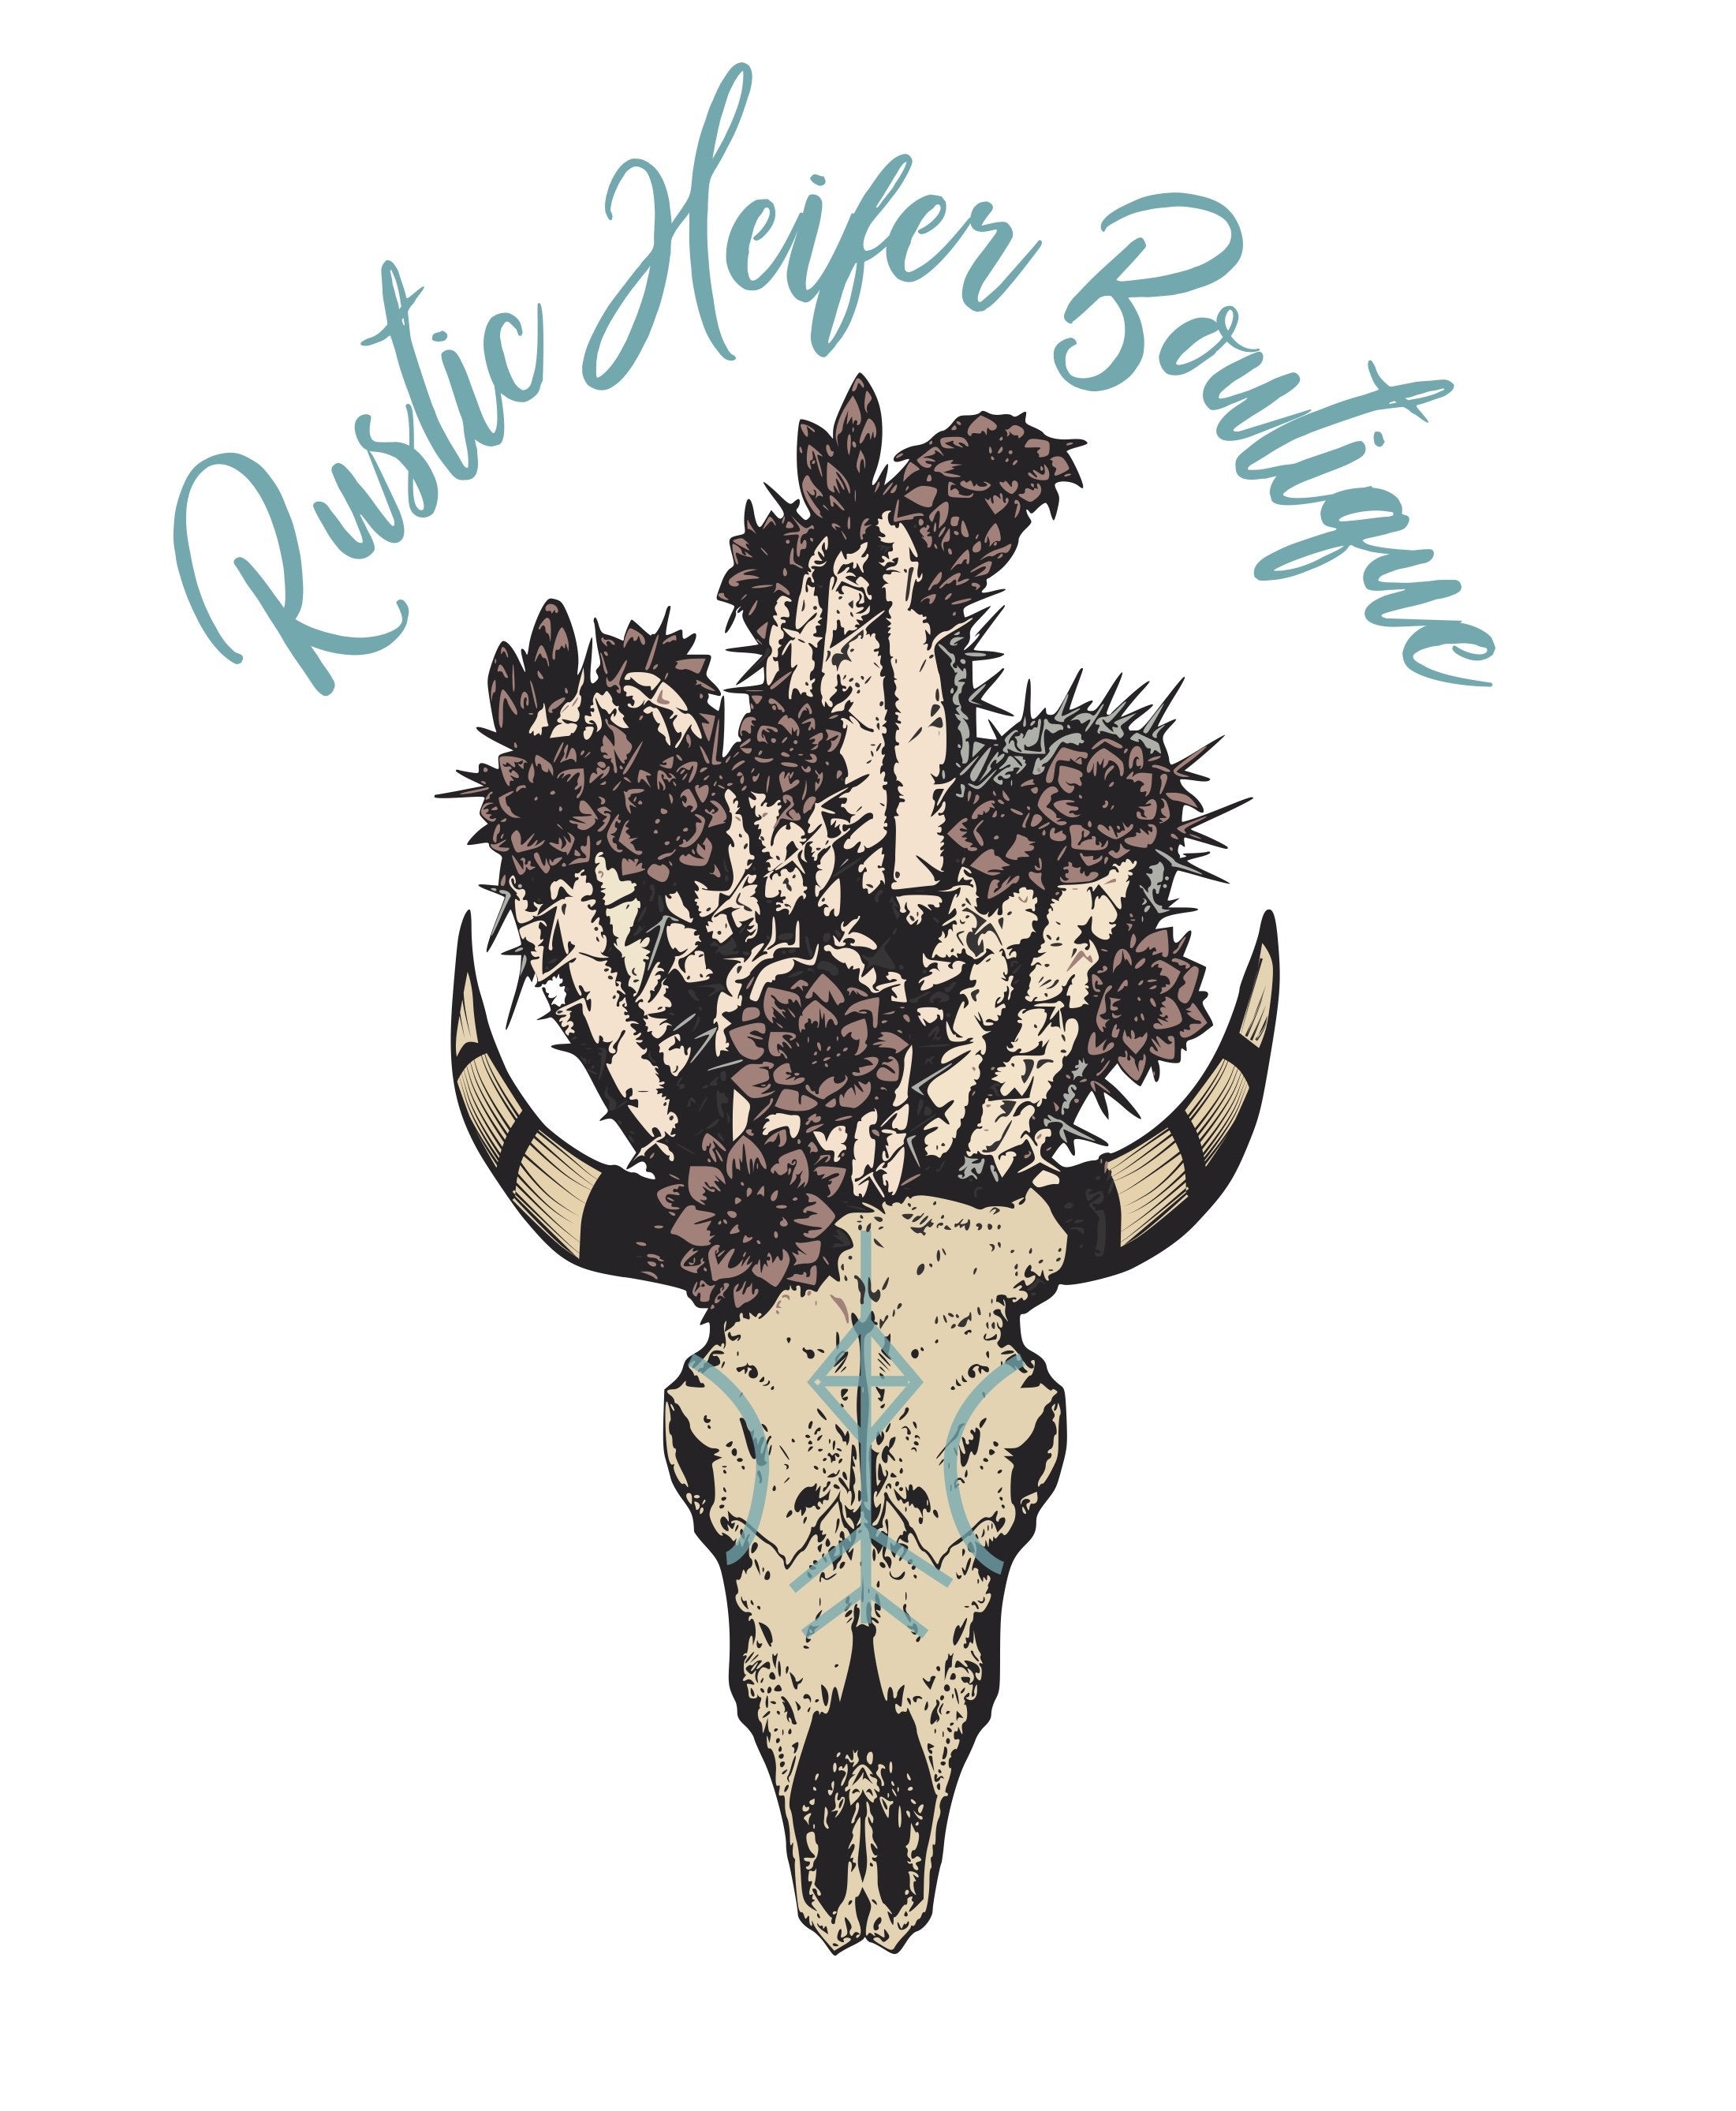 RUSTIC HEIFER BOUTIQUE – Rustic Heifer Boutique